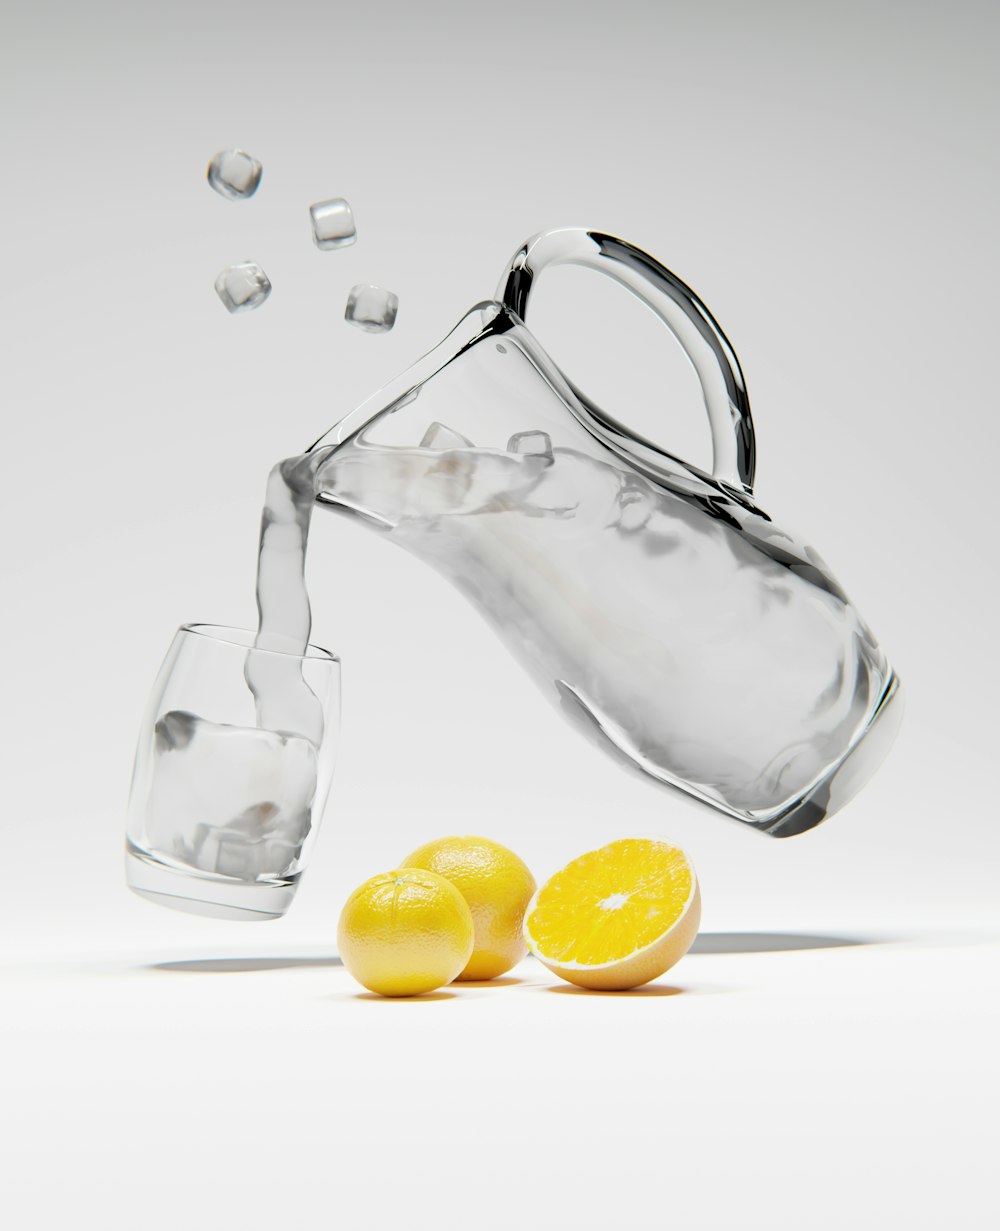 una brocca che versa acqua in un bicchiere pieno di limoni